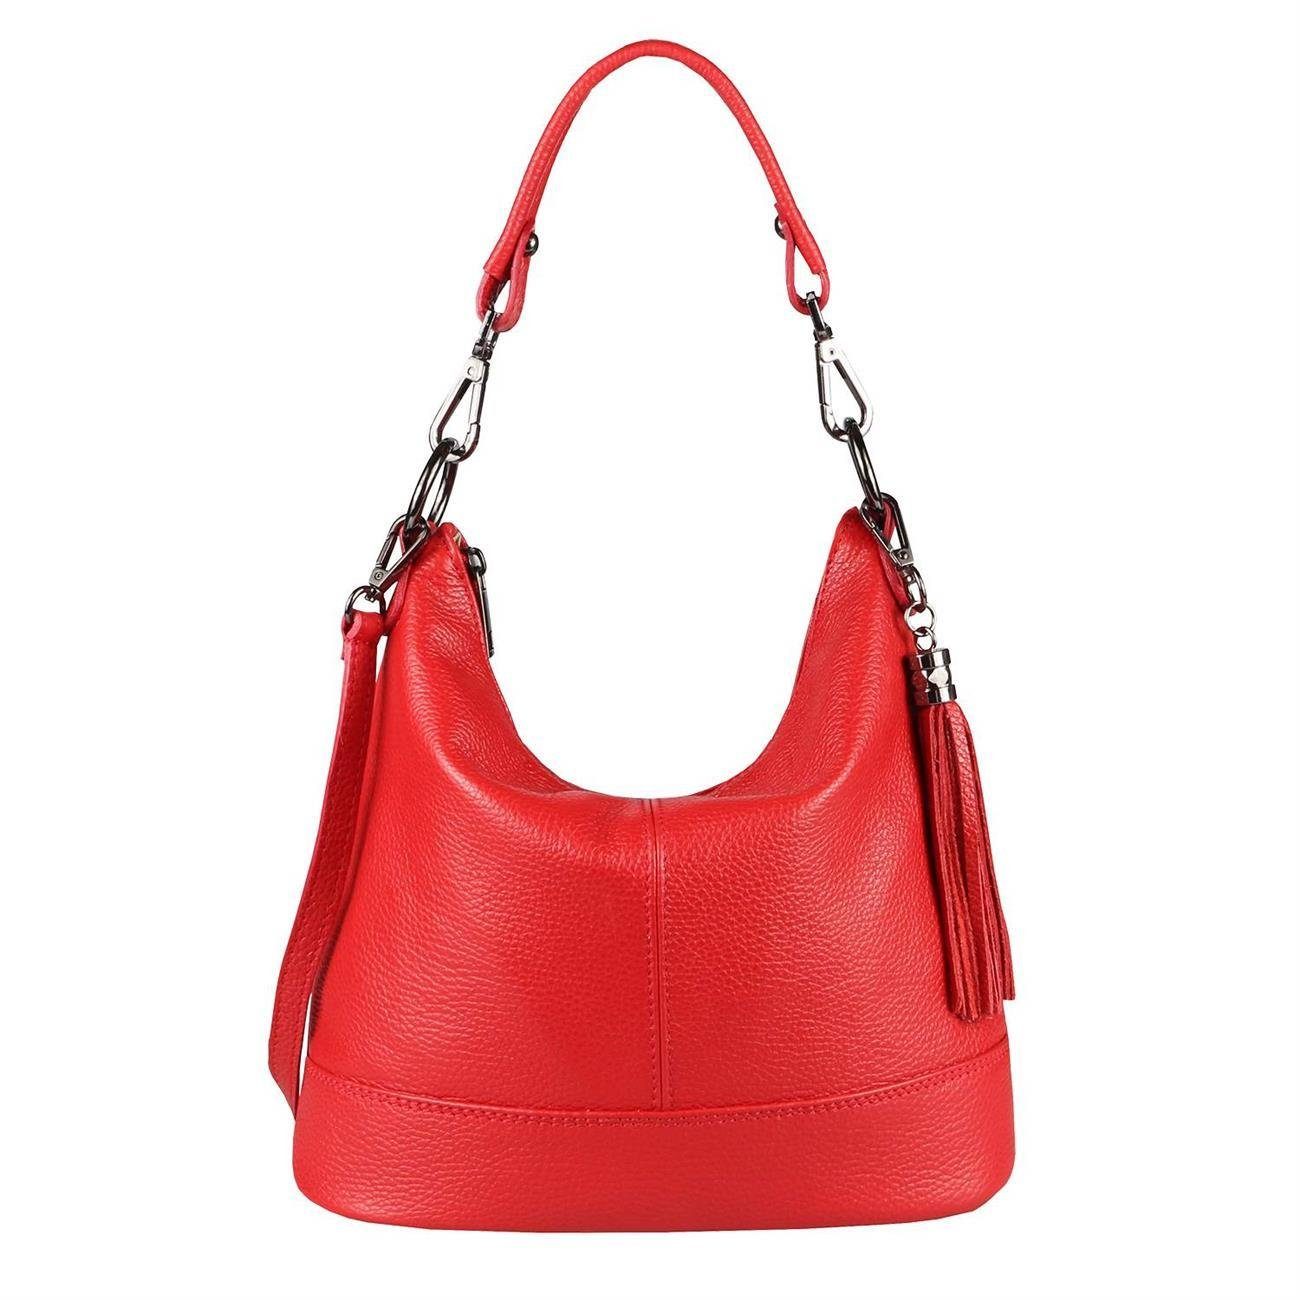 Shopper, ITALYSHOP24 Made als Italy tragbar CrossOver, Damen Umhängetasche Leder Rot in Handtasche, Tasche Schultertasche